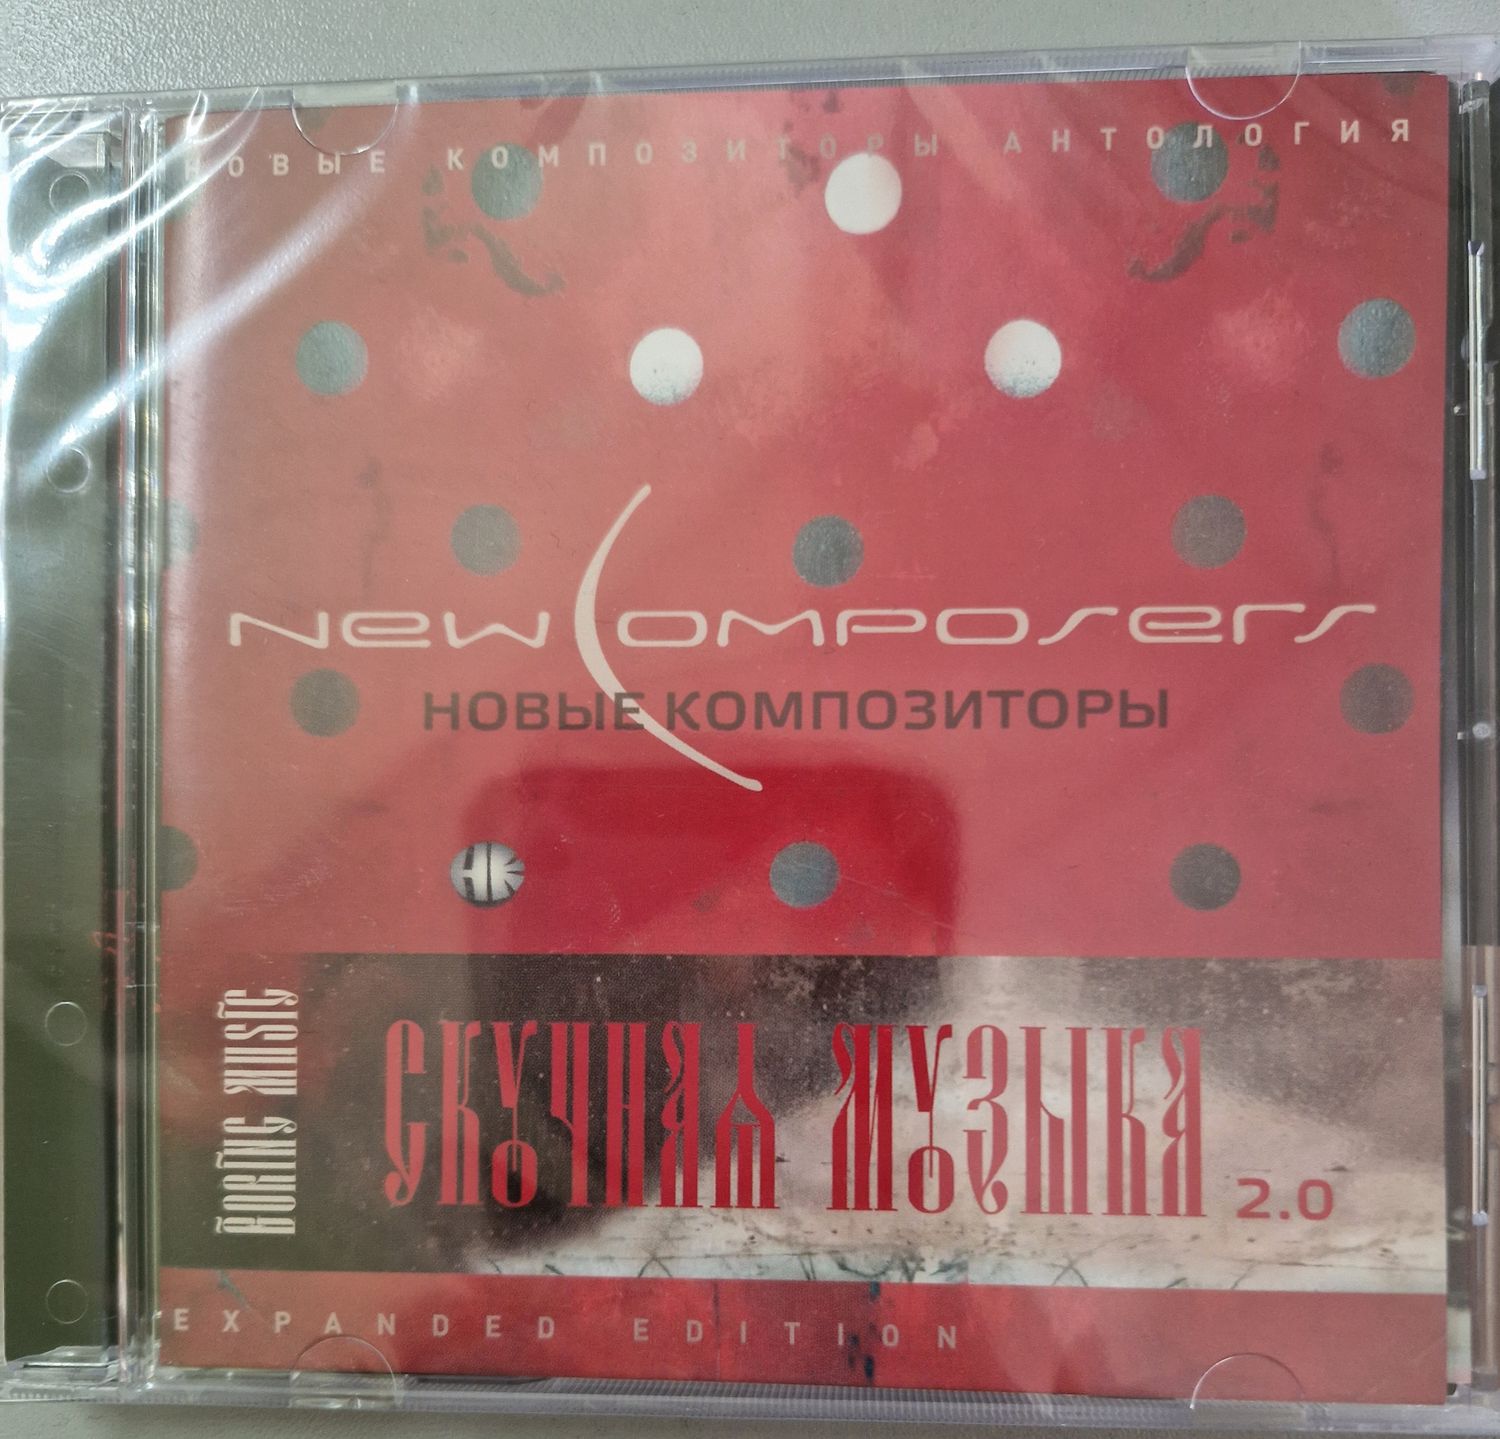 CD: Новые Композиторы — «Скучная Музыка 2.0» (2017)